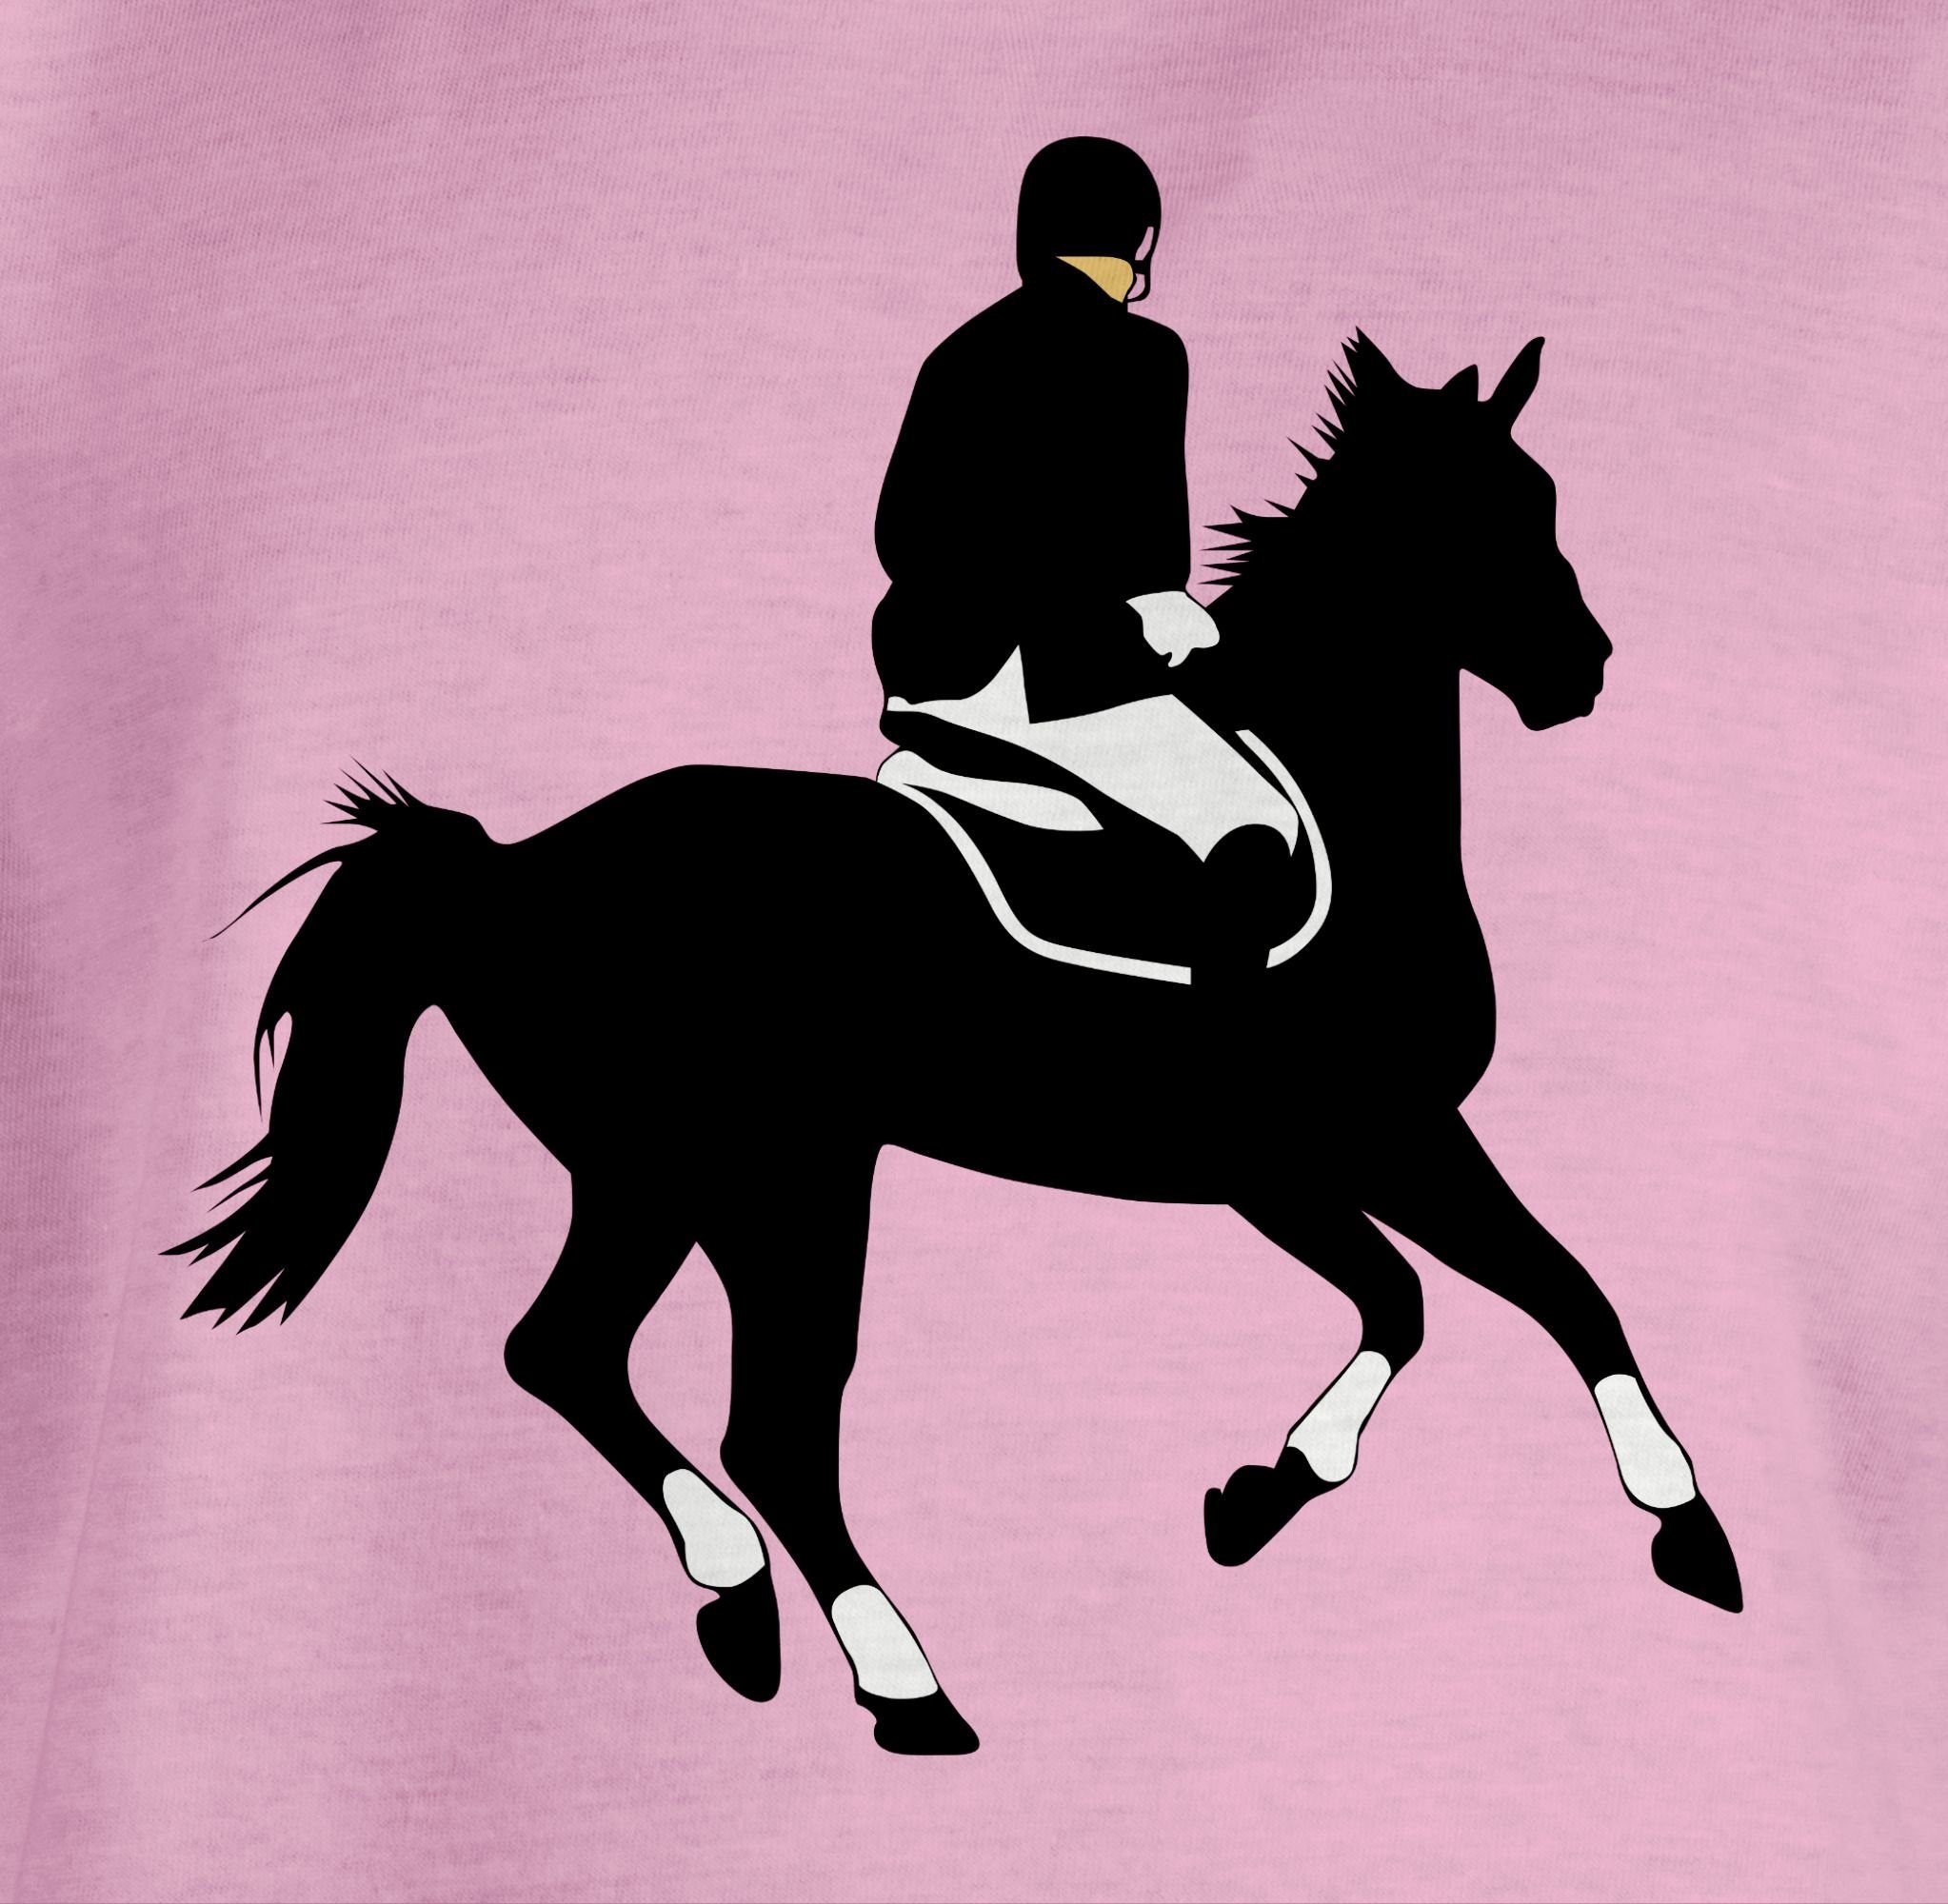 T-Shirt Pferd Dressurreiten Dressur Reiter Rosa Shirtracer Pferd 2